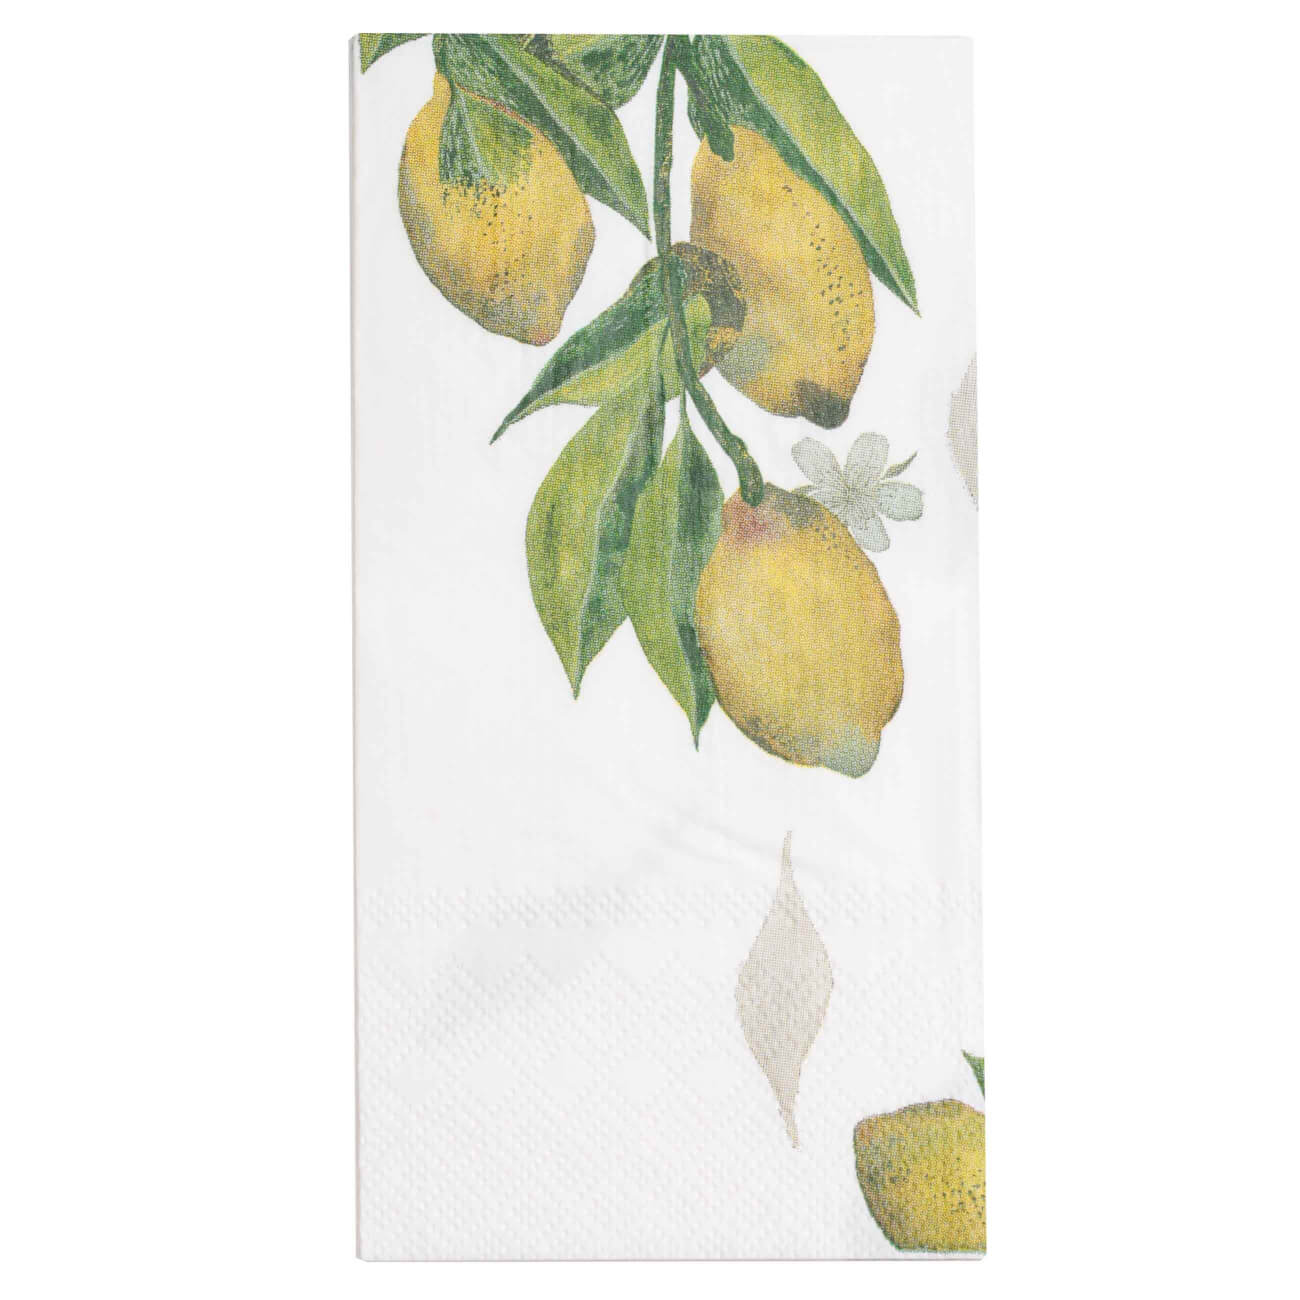 Салфетки бумажные, 33х33 см, 20 шт, прямоугольные, белые, Лимоны на ветке, Sicily in bloom салфетки бумажные 33х33 см 20 шт прямоугольные поцелуй климт art поцелуй